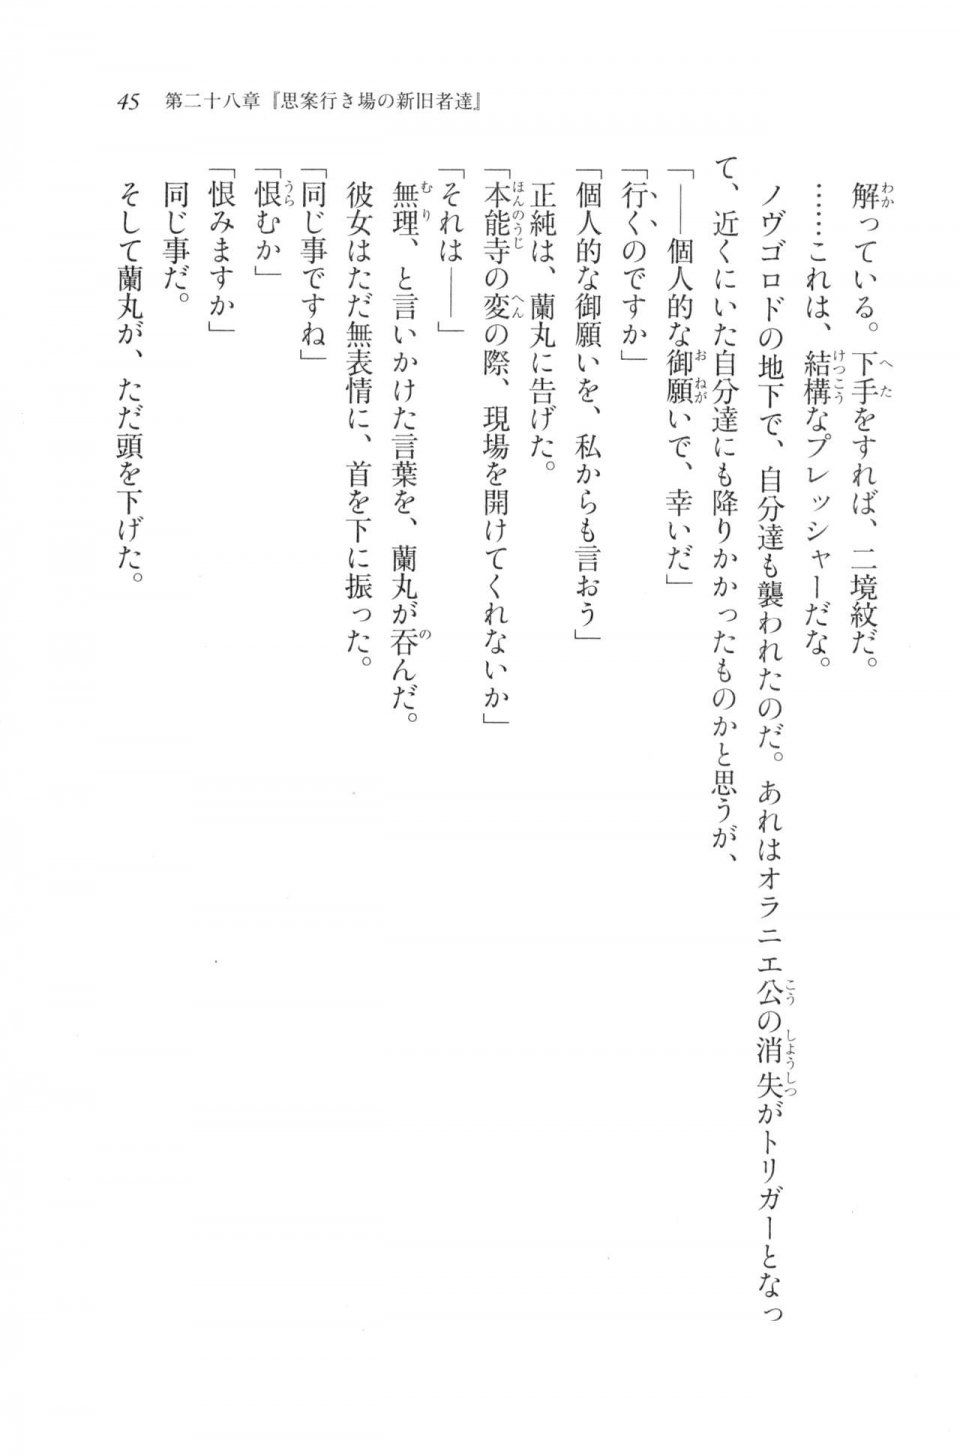 Kyoukai Senjou no Horizon LN Vol 20(8B) - Photo #45